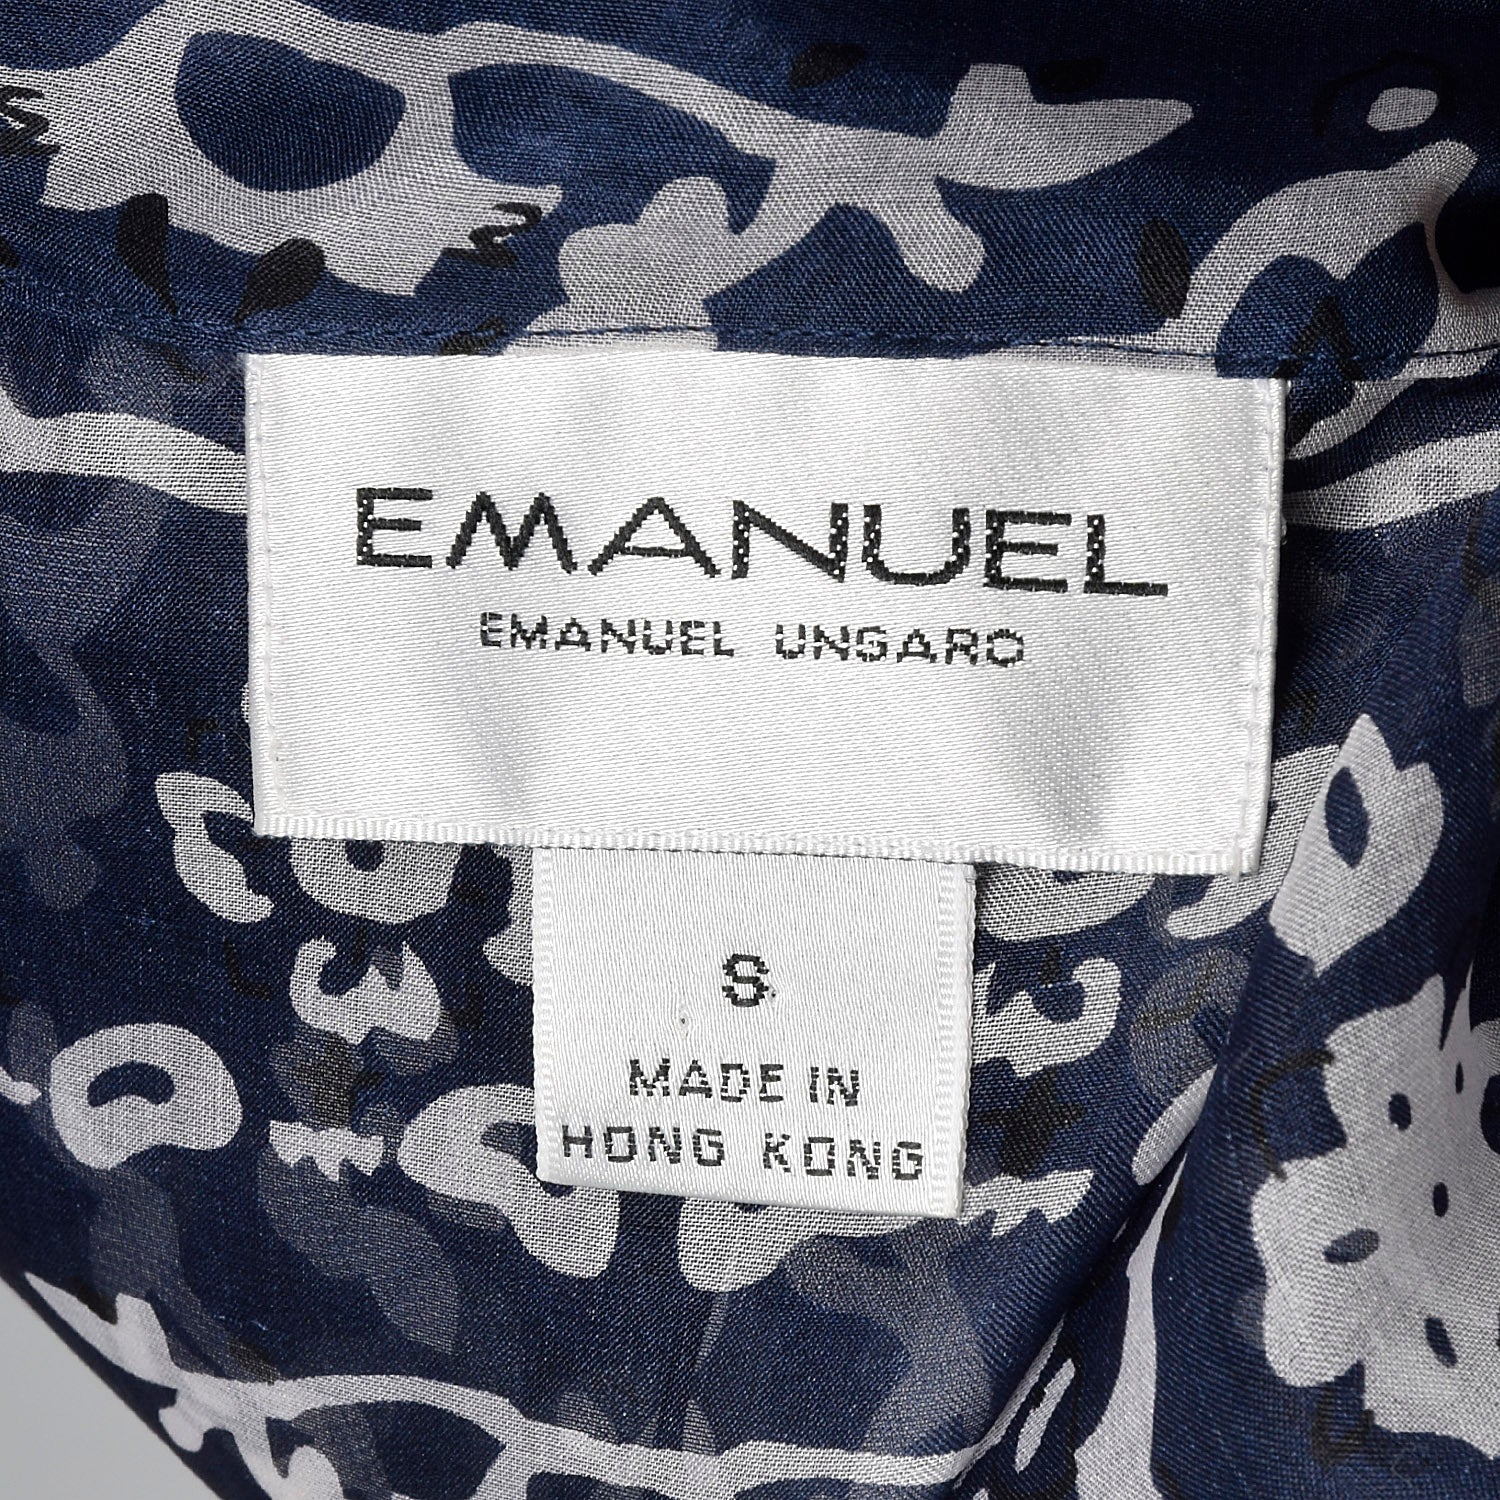 Medium 1990s Emanuel Ungaro Sheer Blouse and Attached Bodysuit